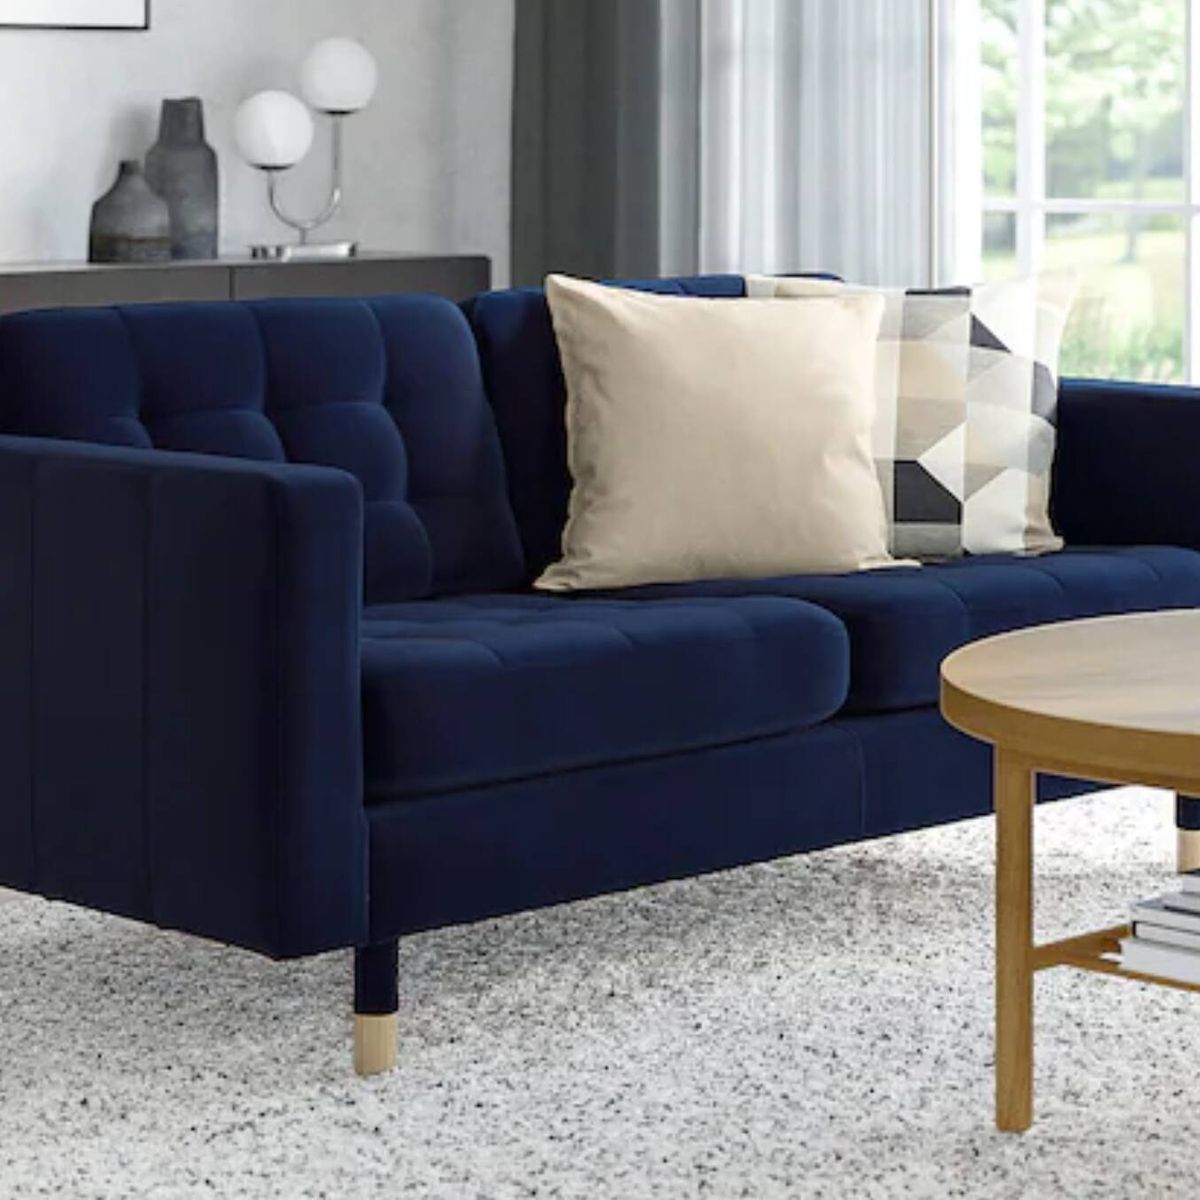 Elegante y estiloso: el nuevo sofá de Ikea cambiará tu salón y tu casa